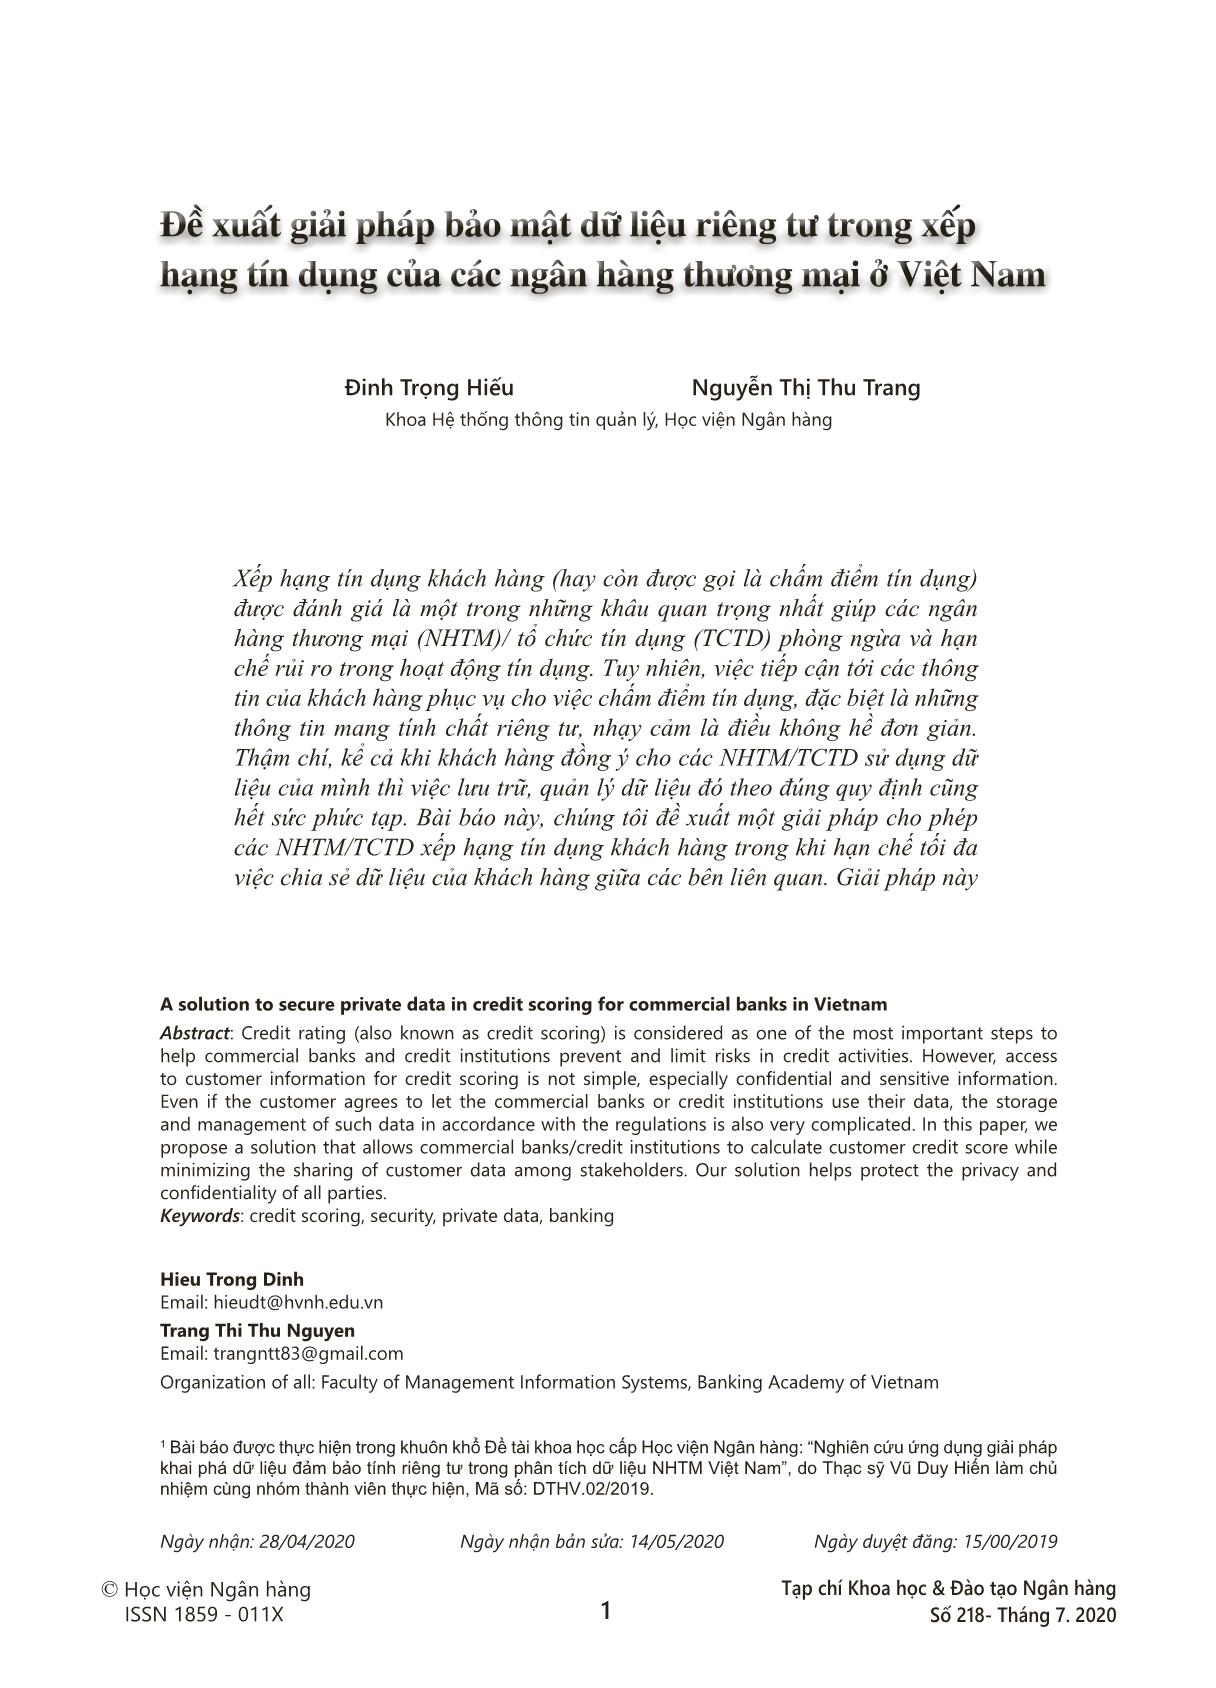 Đề xuất giải pháp bảo mật dữ liệu riêng tư trong xếp hạng tín dụng của các ngân hàng thương mại ở Việt Nam trang 1